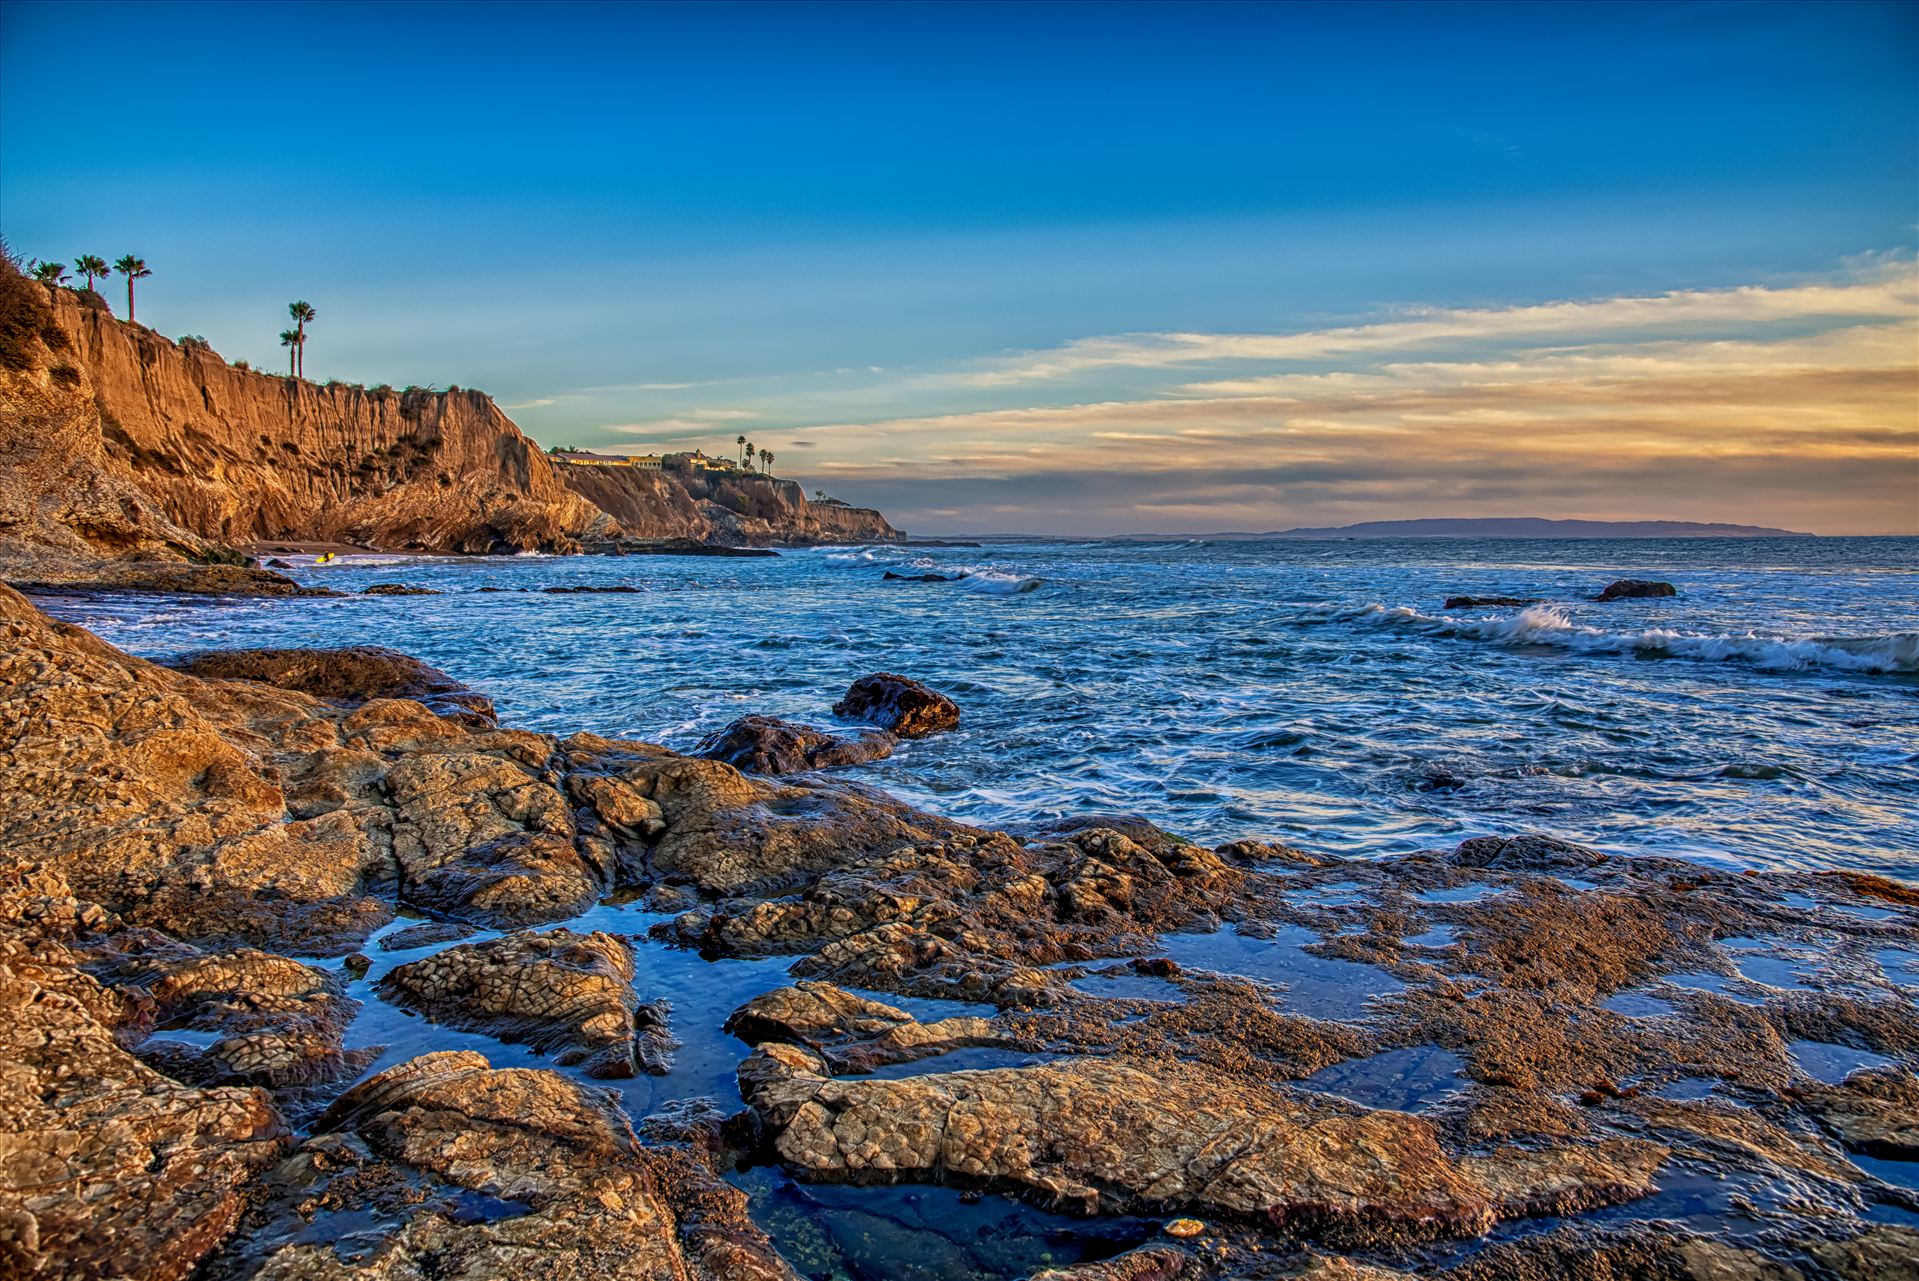 The Cliffs Fairytale Cove.jpg  by Sarah Williams